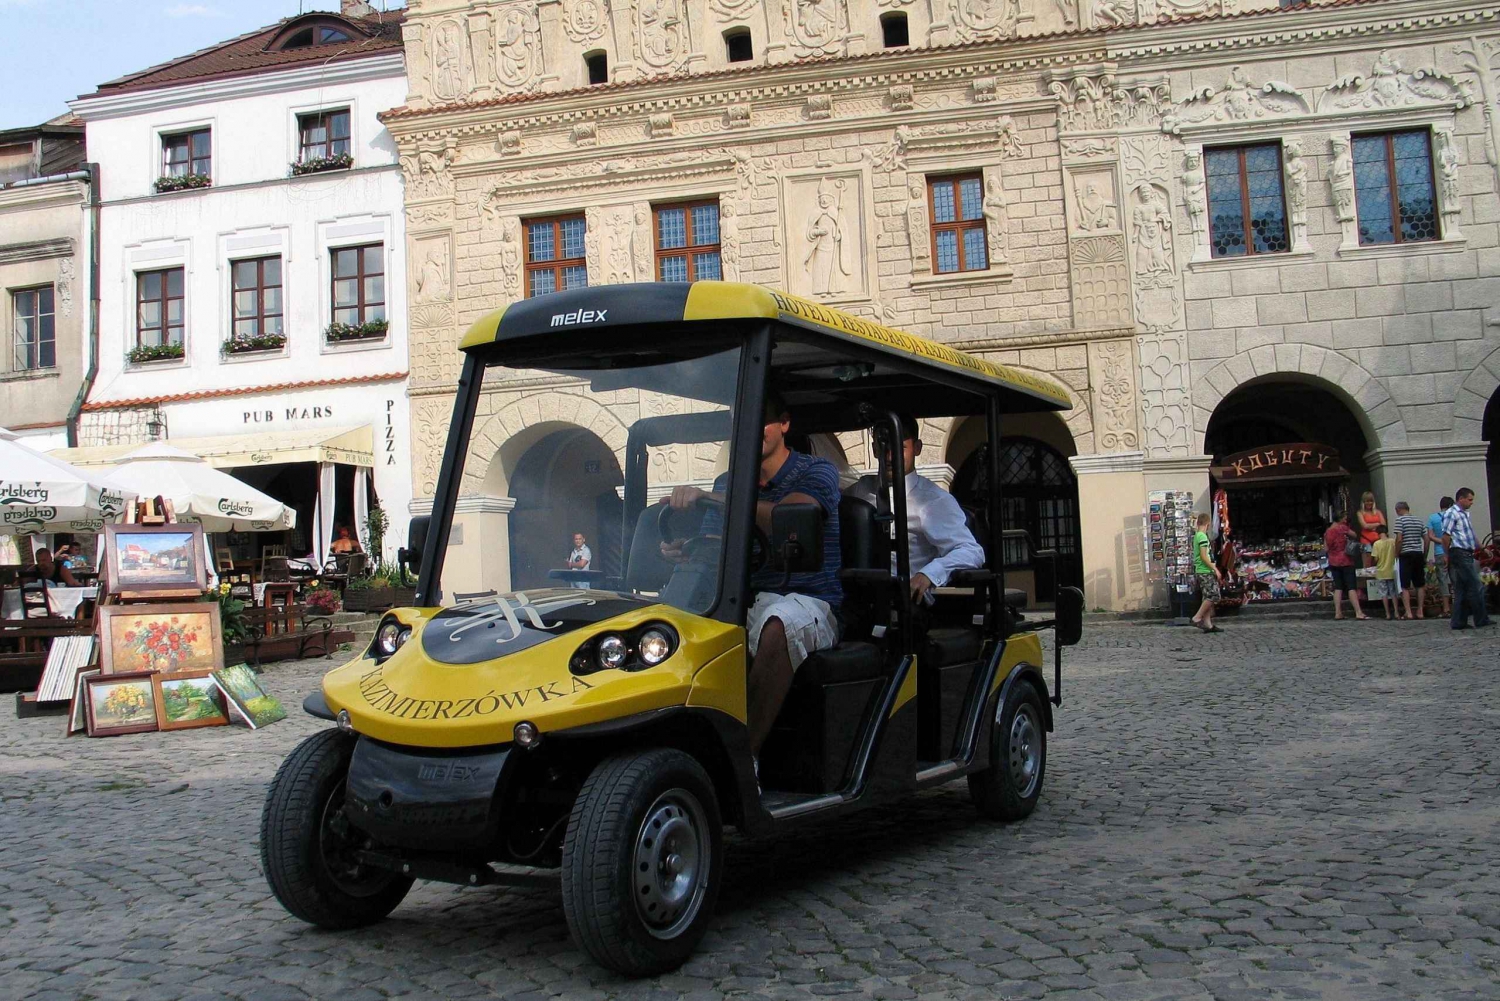 Krakova: Ghetto sähköisellä golfkärryllä: Vanhakaupunki, Kazimierz & Ghetto